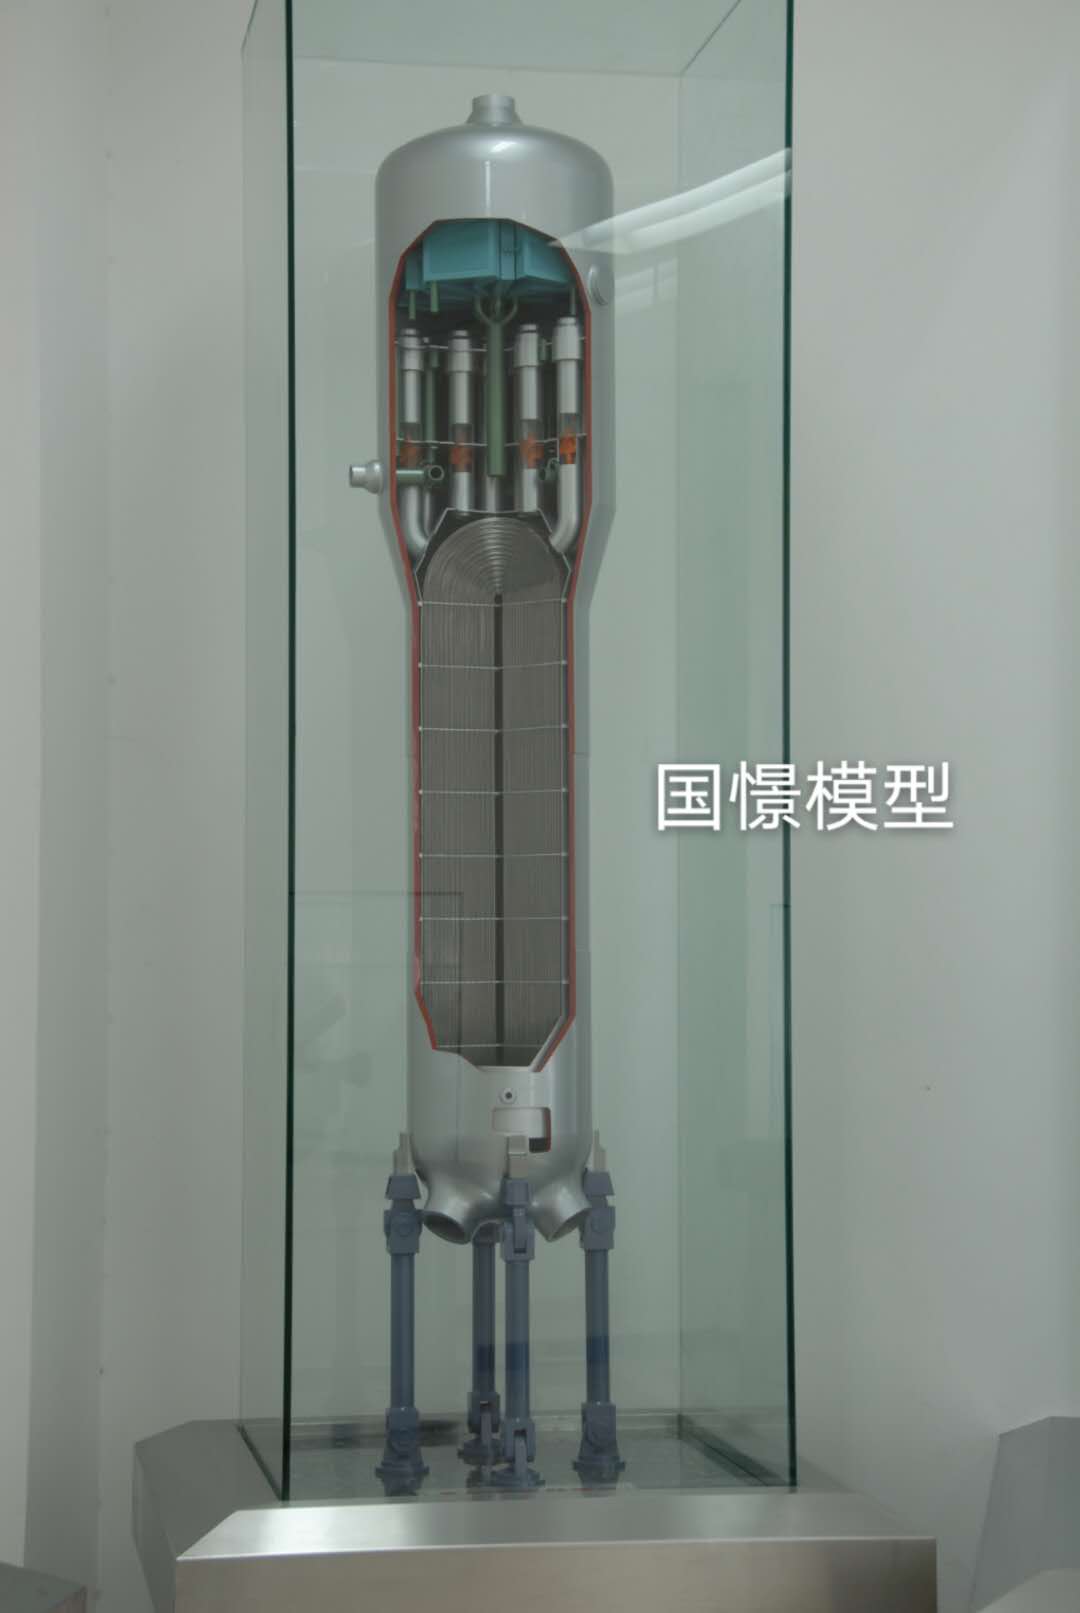 丰顺县机械模型